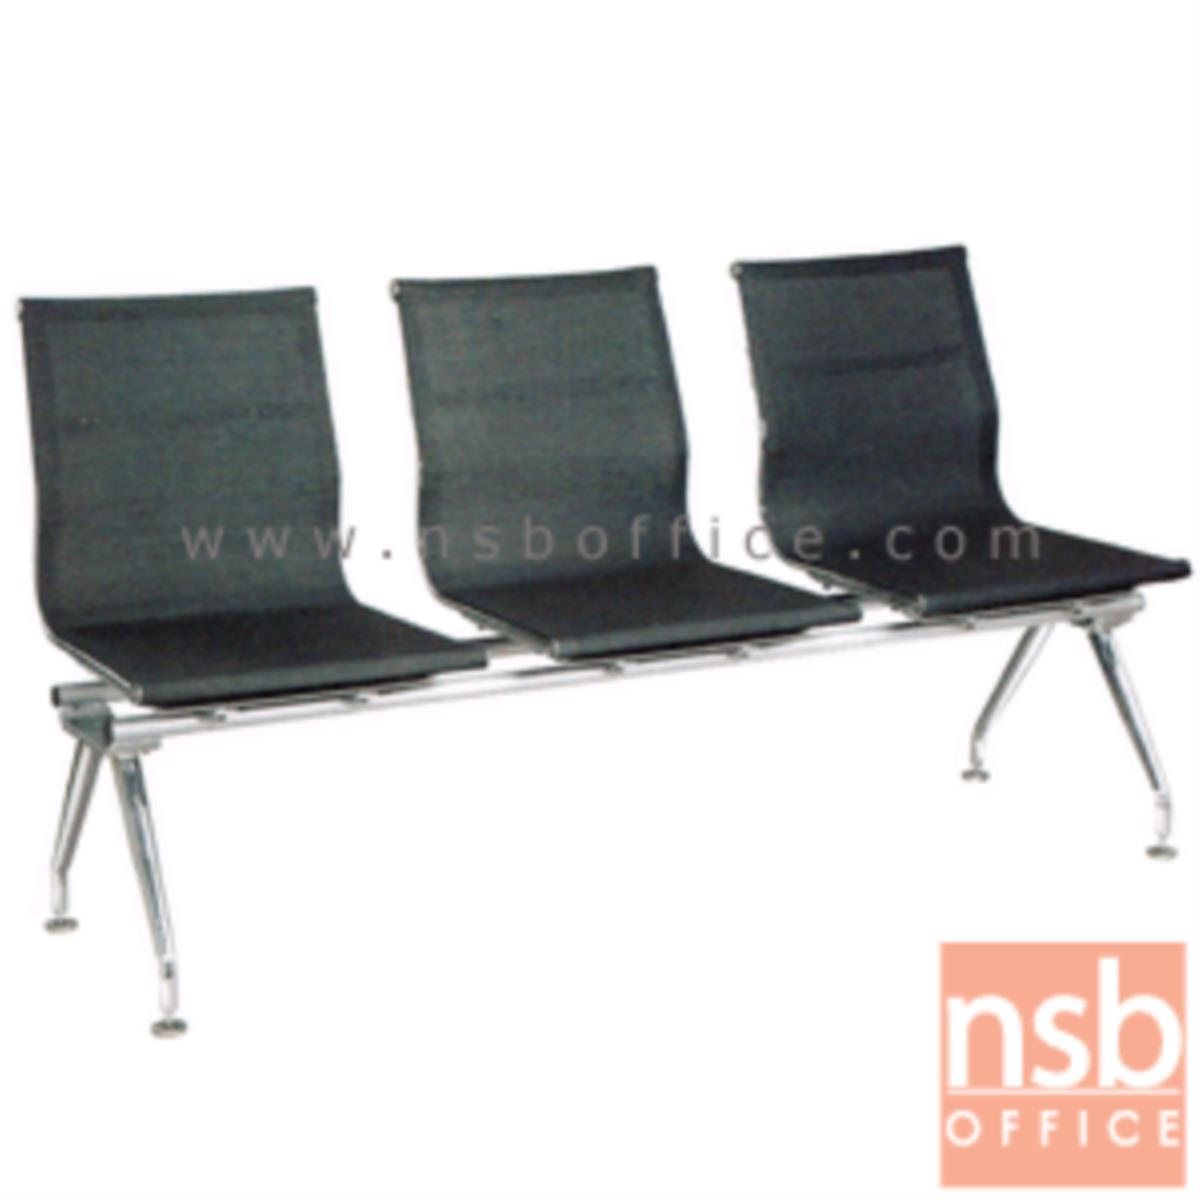 B06A101:เก้าอี้นั่งคอยผ้าเน็ต รุ่น CBT-186 2 ,3 ,4 ที่นั่ง ขนาด 110W ,172W ,220W cm. ขาเหล็ก